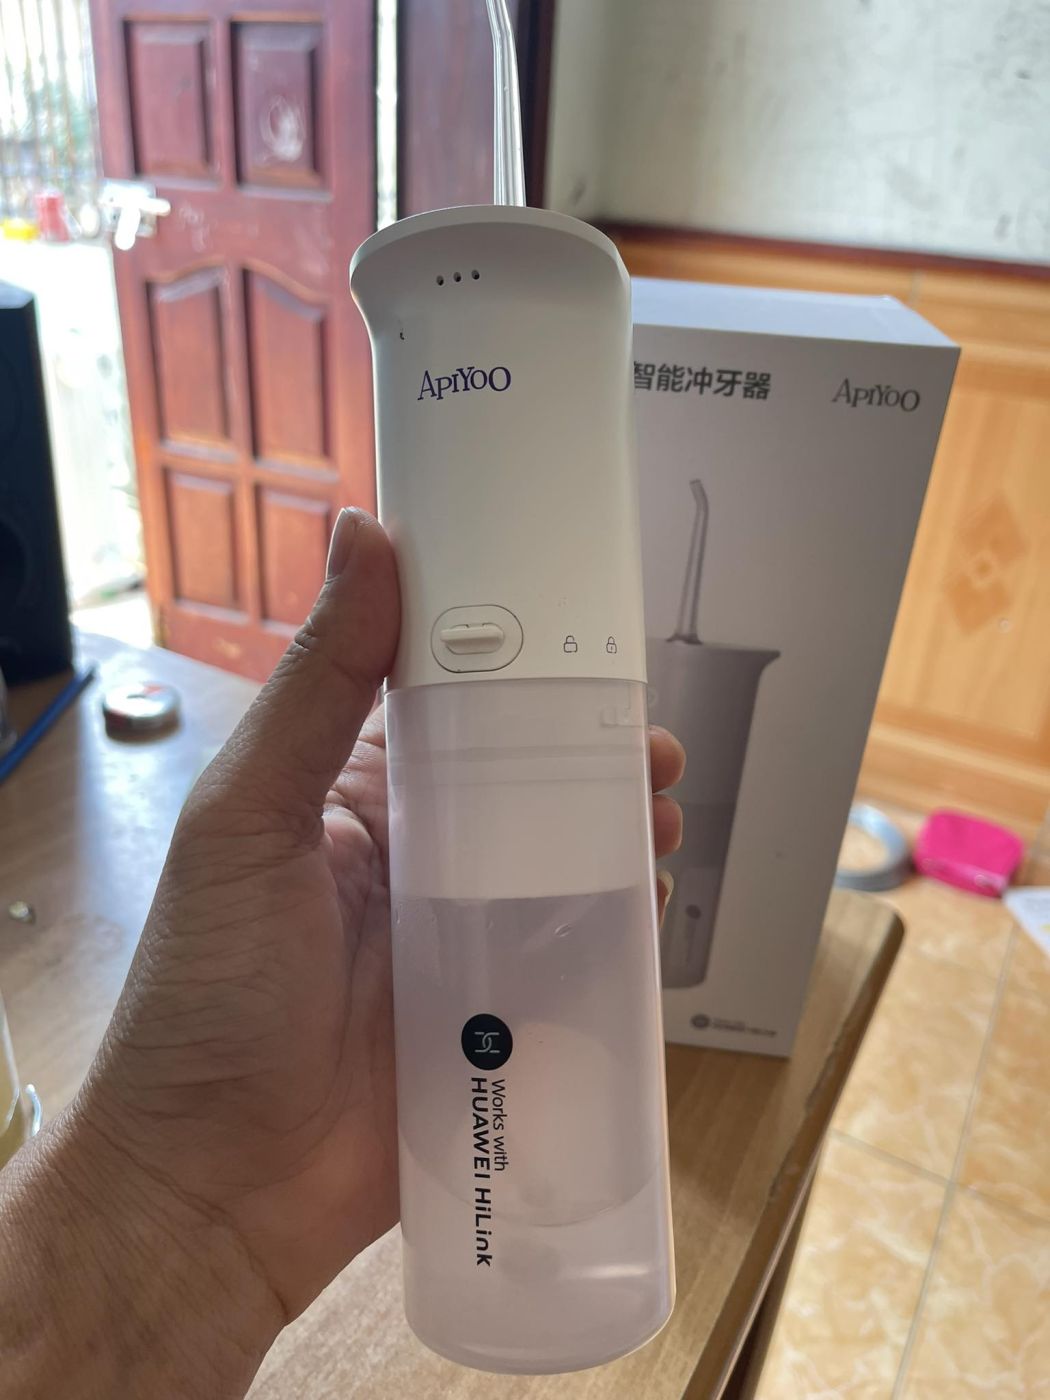 Tăm nước thông minh Huawei APIYOO chính hãng kết nối App